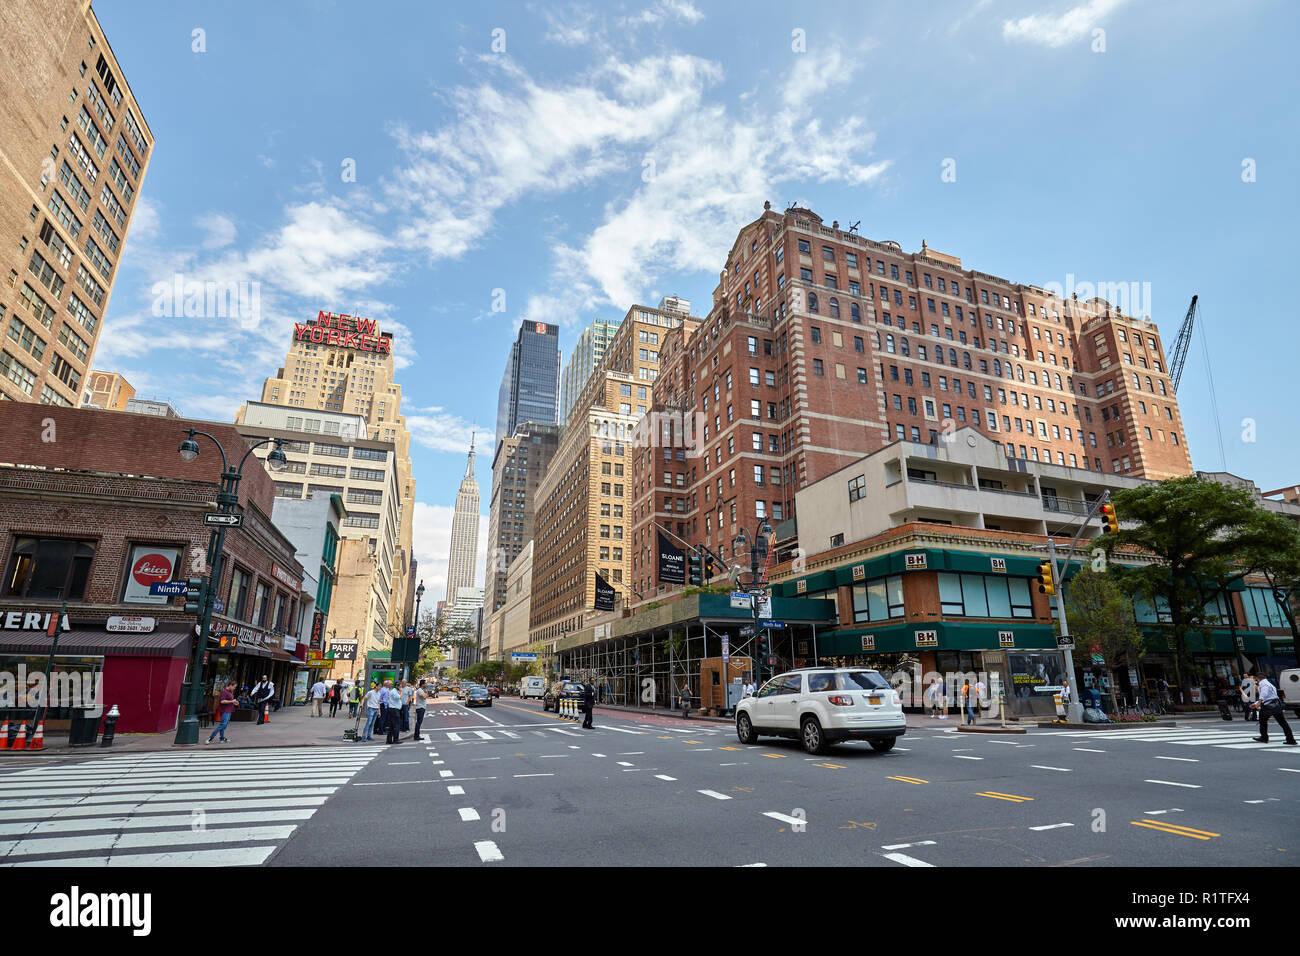 New York, Stati Uniti d'America - 28 Giugno 2018: la vita della città nella "Grande mela", questo soprannome per la città di New York è stata introdotta per la prima volta nel 1920 da John J. Fitz Gerald. Foto Stock